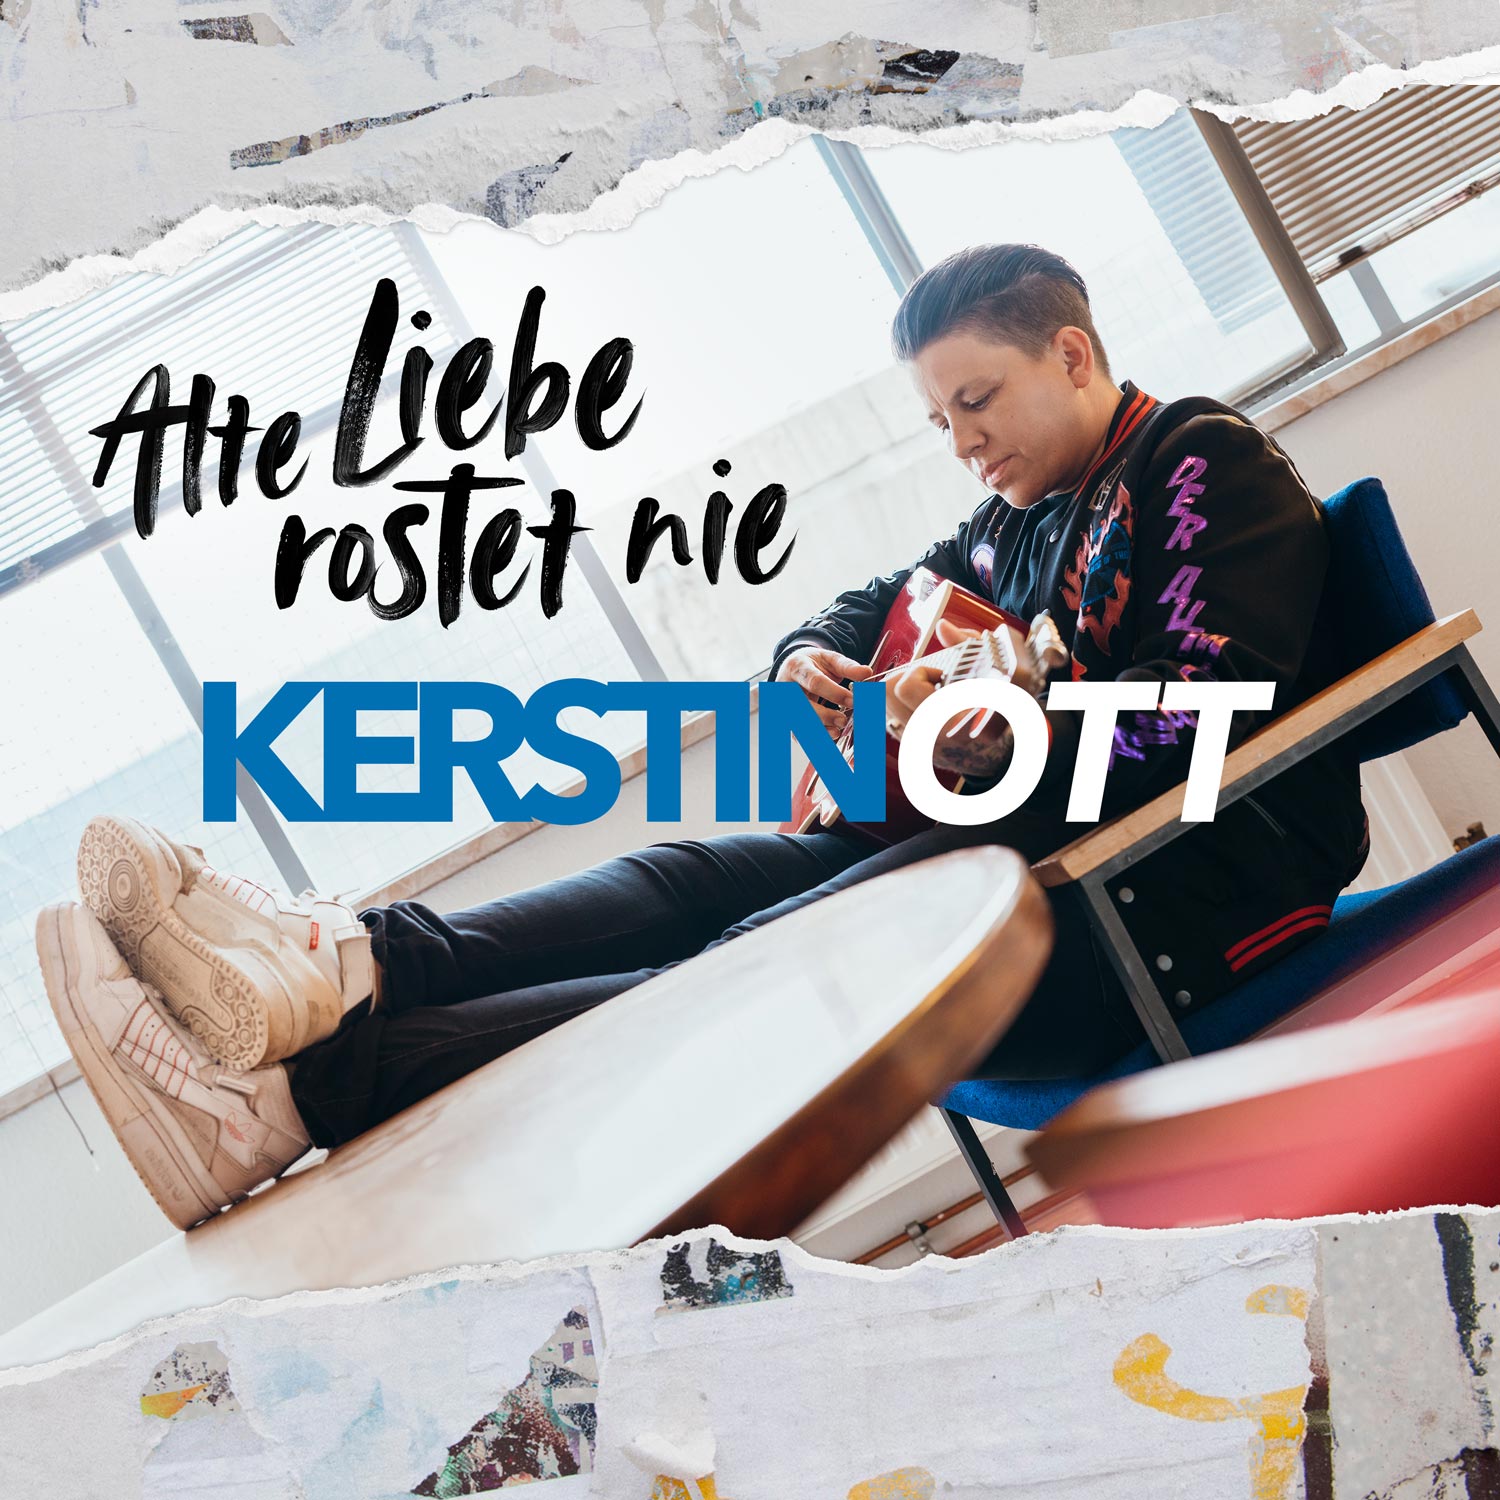 Kerstin Ott Alte Liebe rostet nie cover artwork